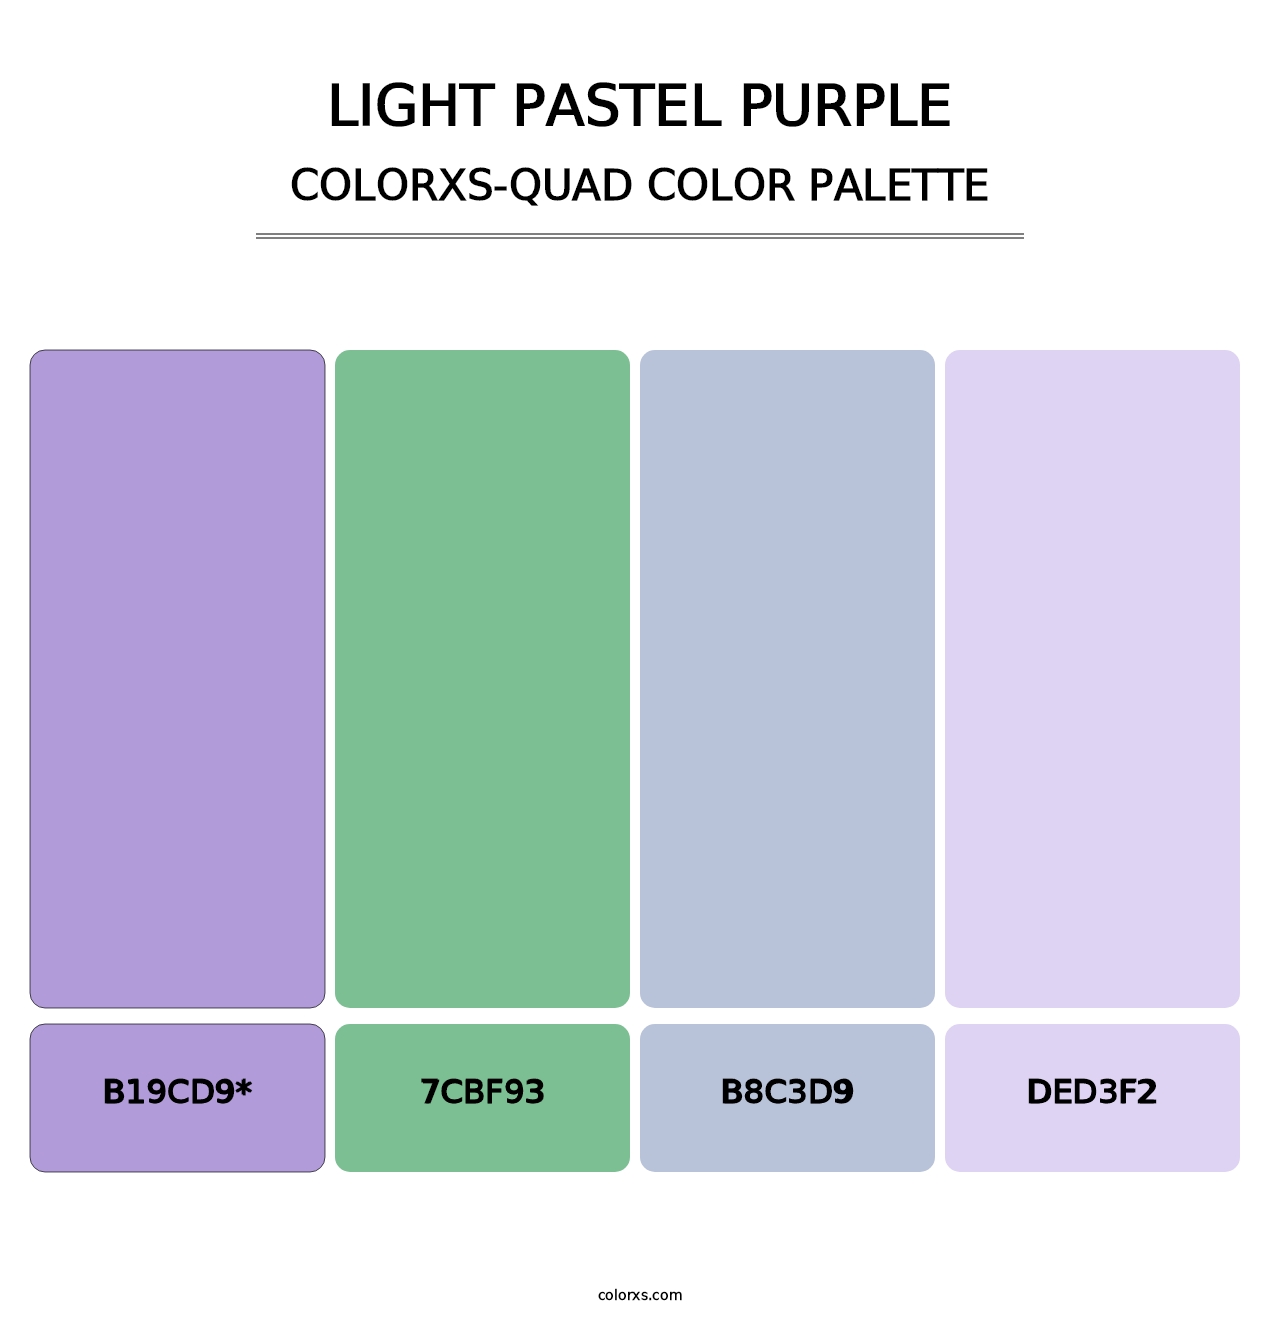 Light Pastel Purple - Colorxs Quad Palette